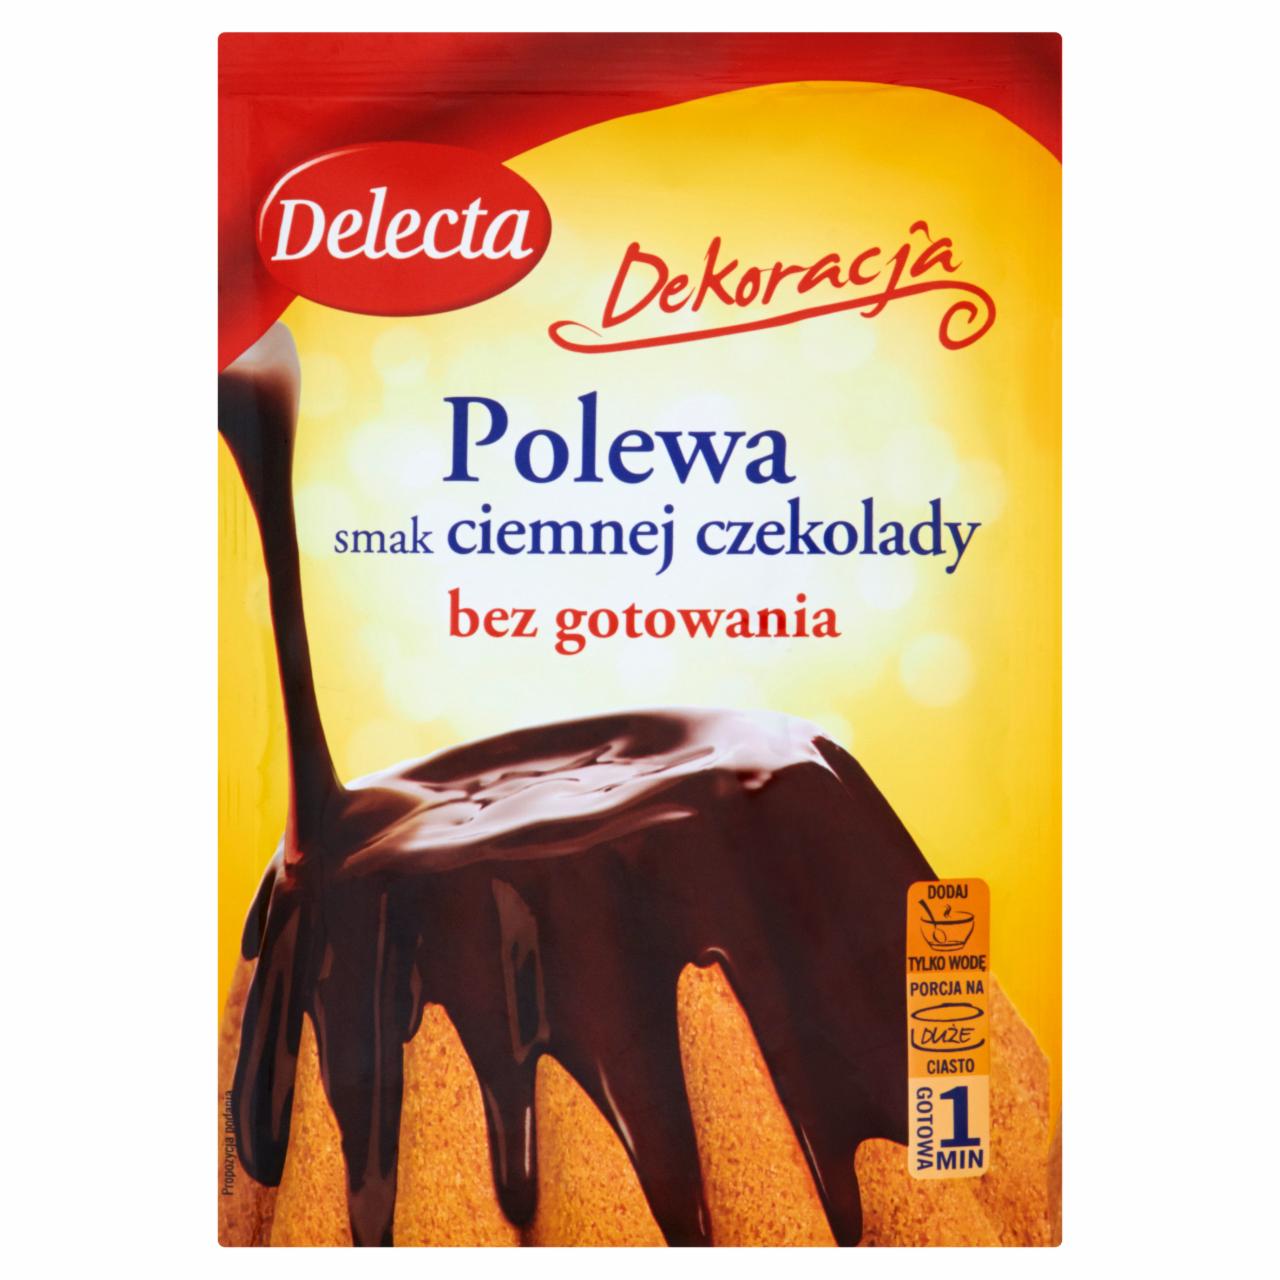 Zdjęcia - Delecta Polewa smak ciemnej czekolady 80 g